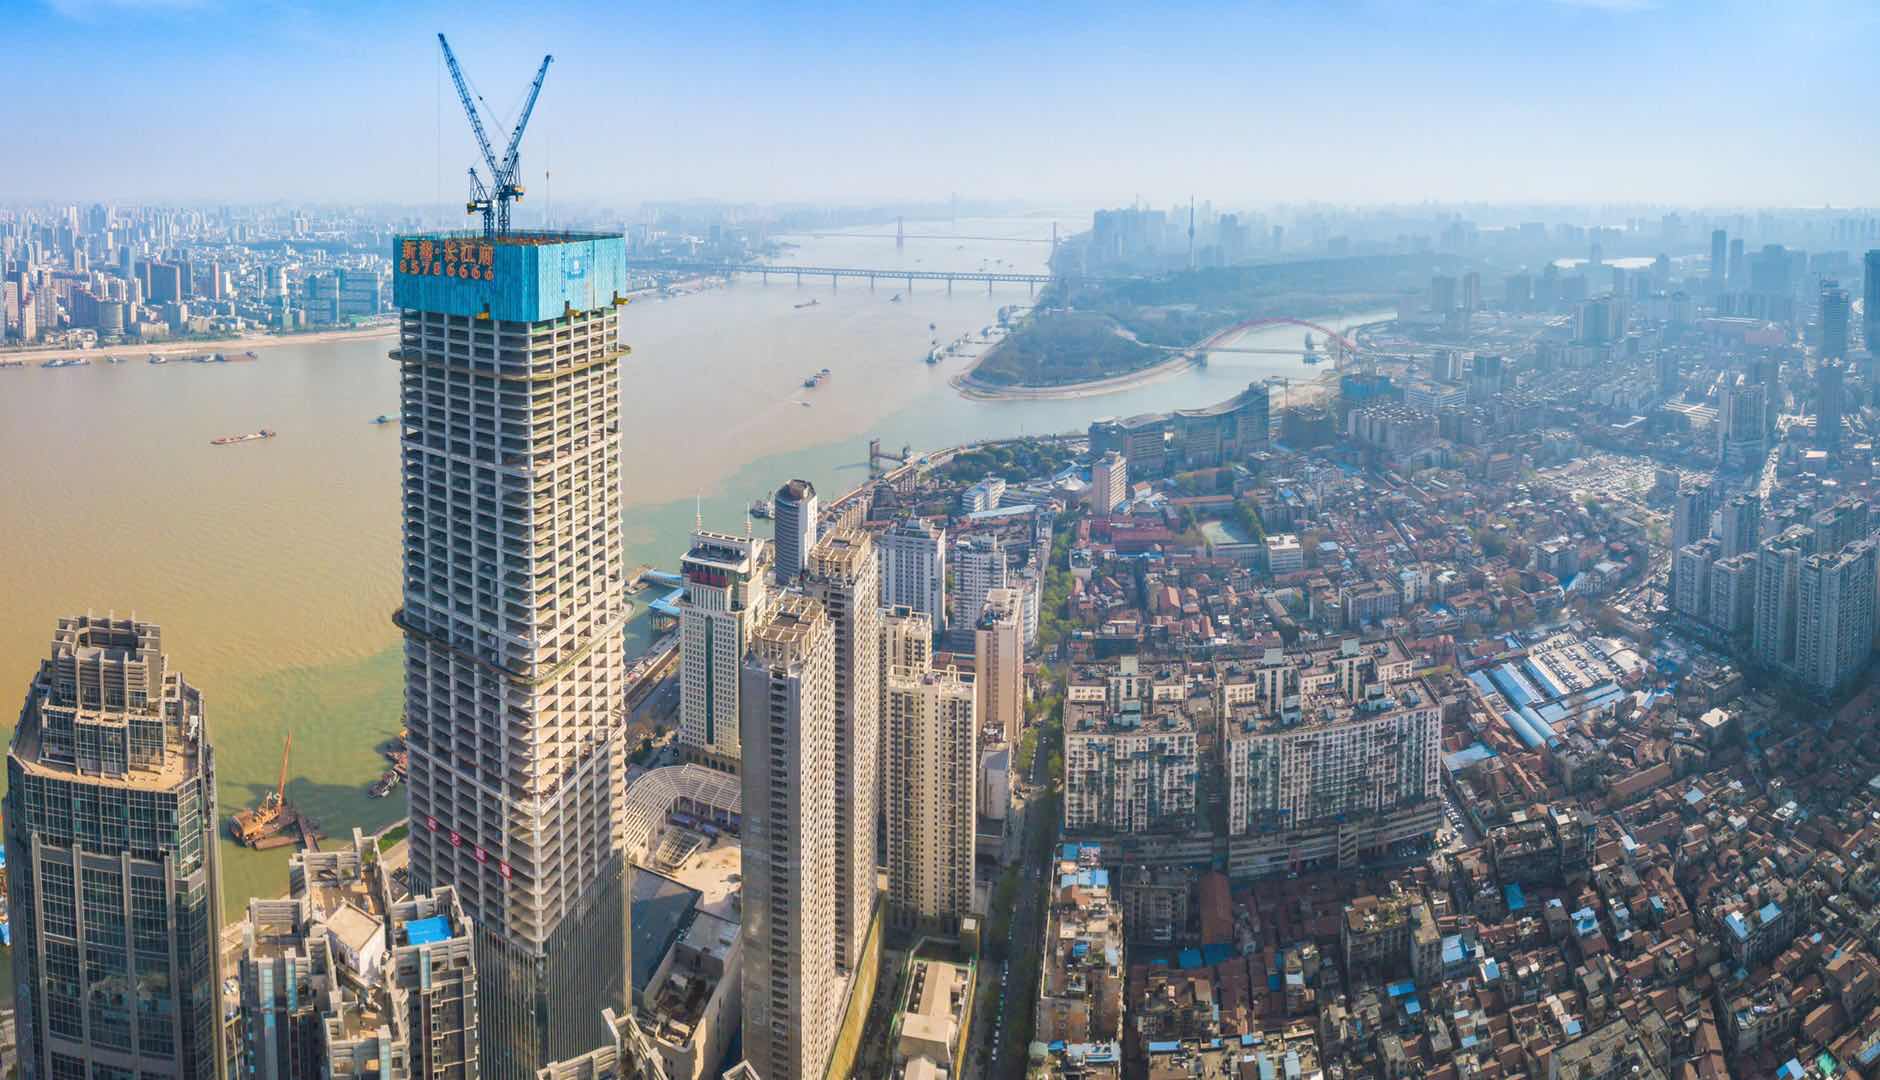 汉口滨江第一高楼武汉长江航运中心项目主体封顶